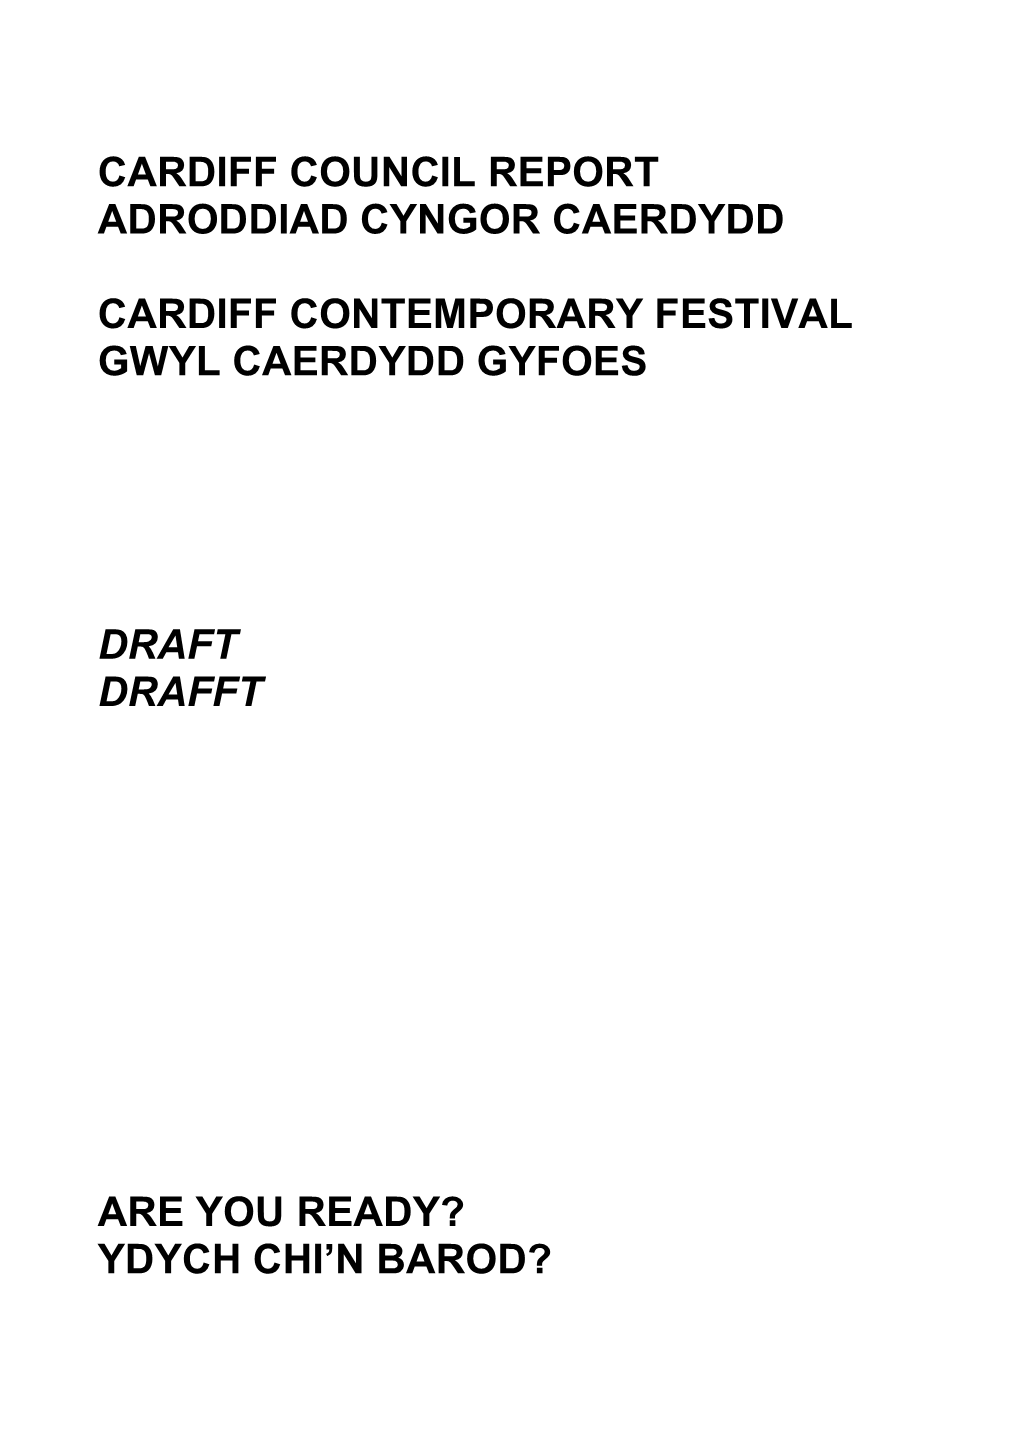 Cardiff Contemporary Festival Gwyl Caerdydd Gyfoes